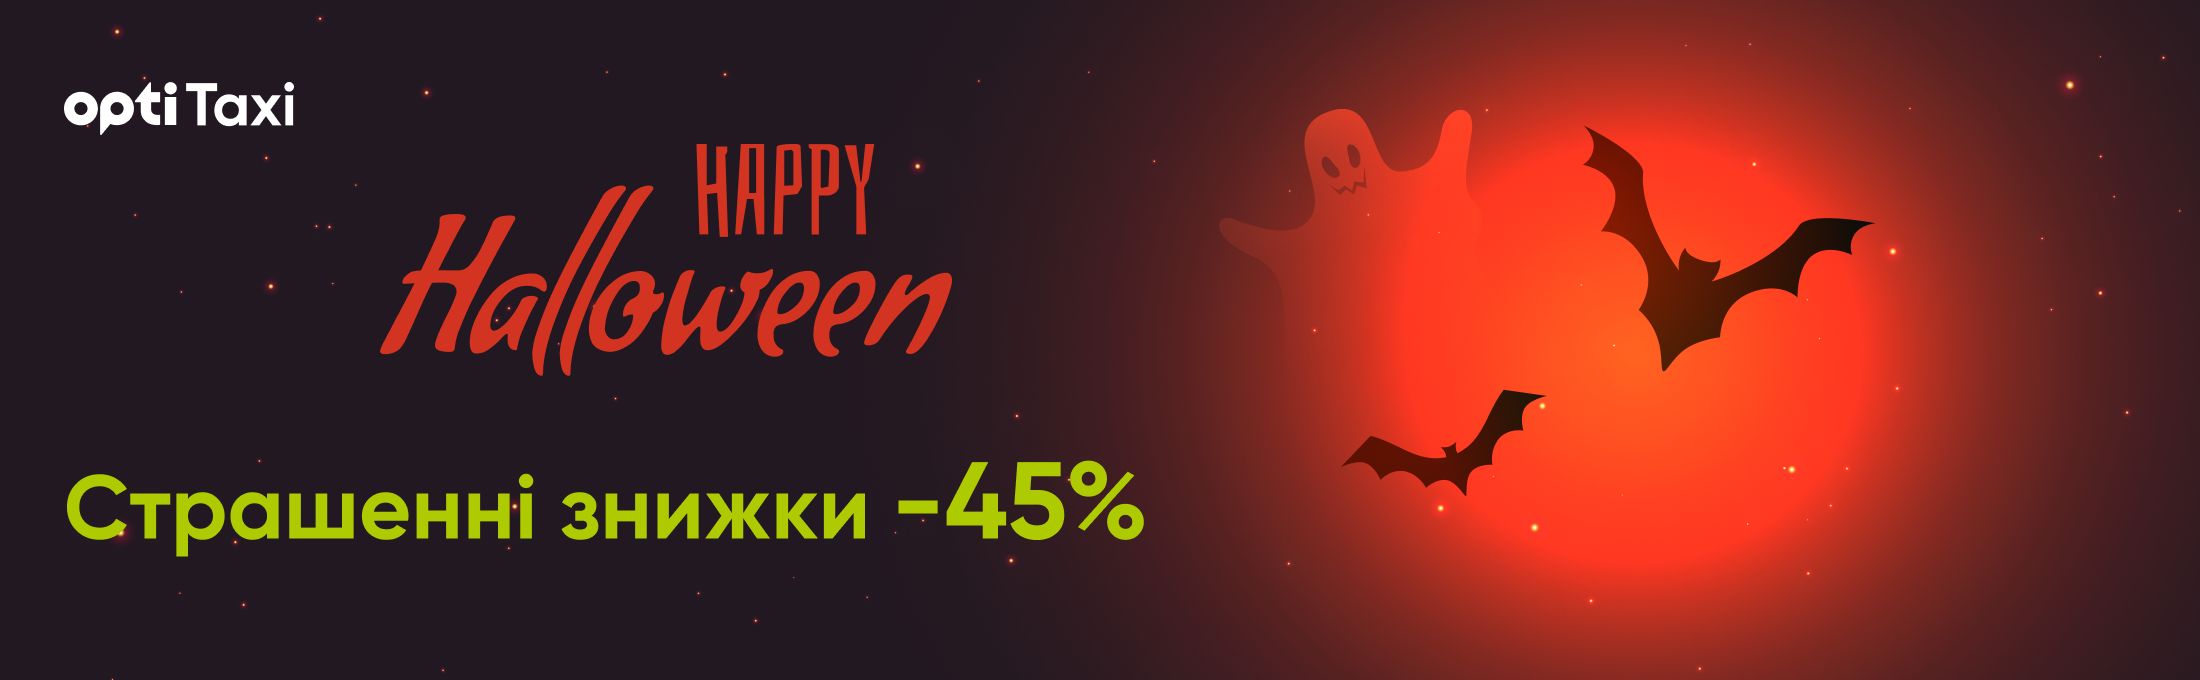 Отпразднуйте Хэллоуин вместе с Opti Taxi: воспользуйтесь пугающей скидкой – 45% Мариуполь